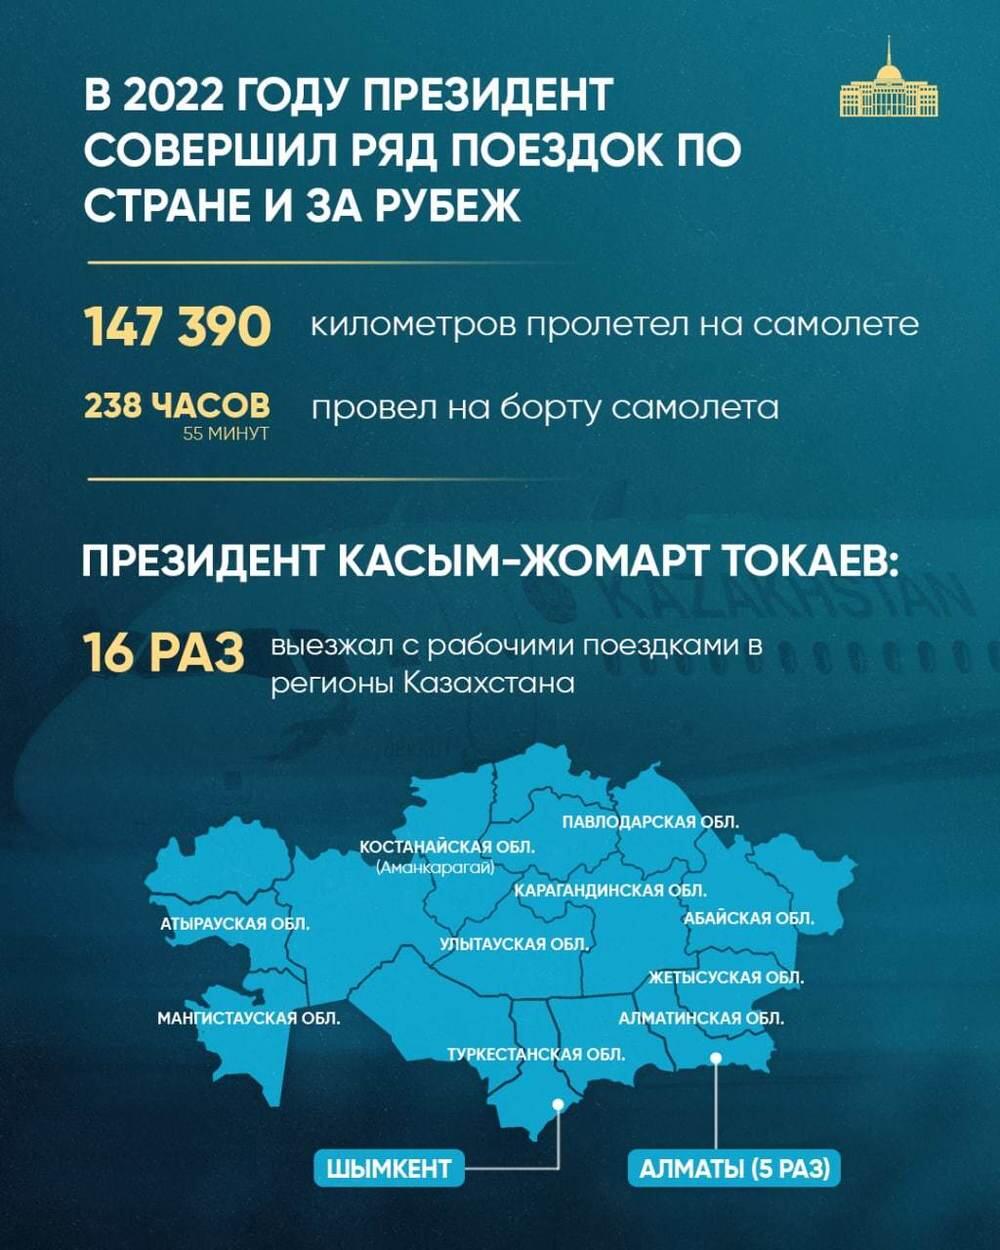 68 законов и 238 часов в самолете: итоги деятельности Токаева за 2022 год. Фото: Telegram/bort_01